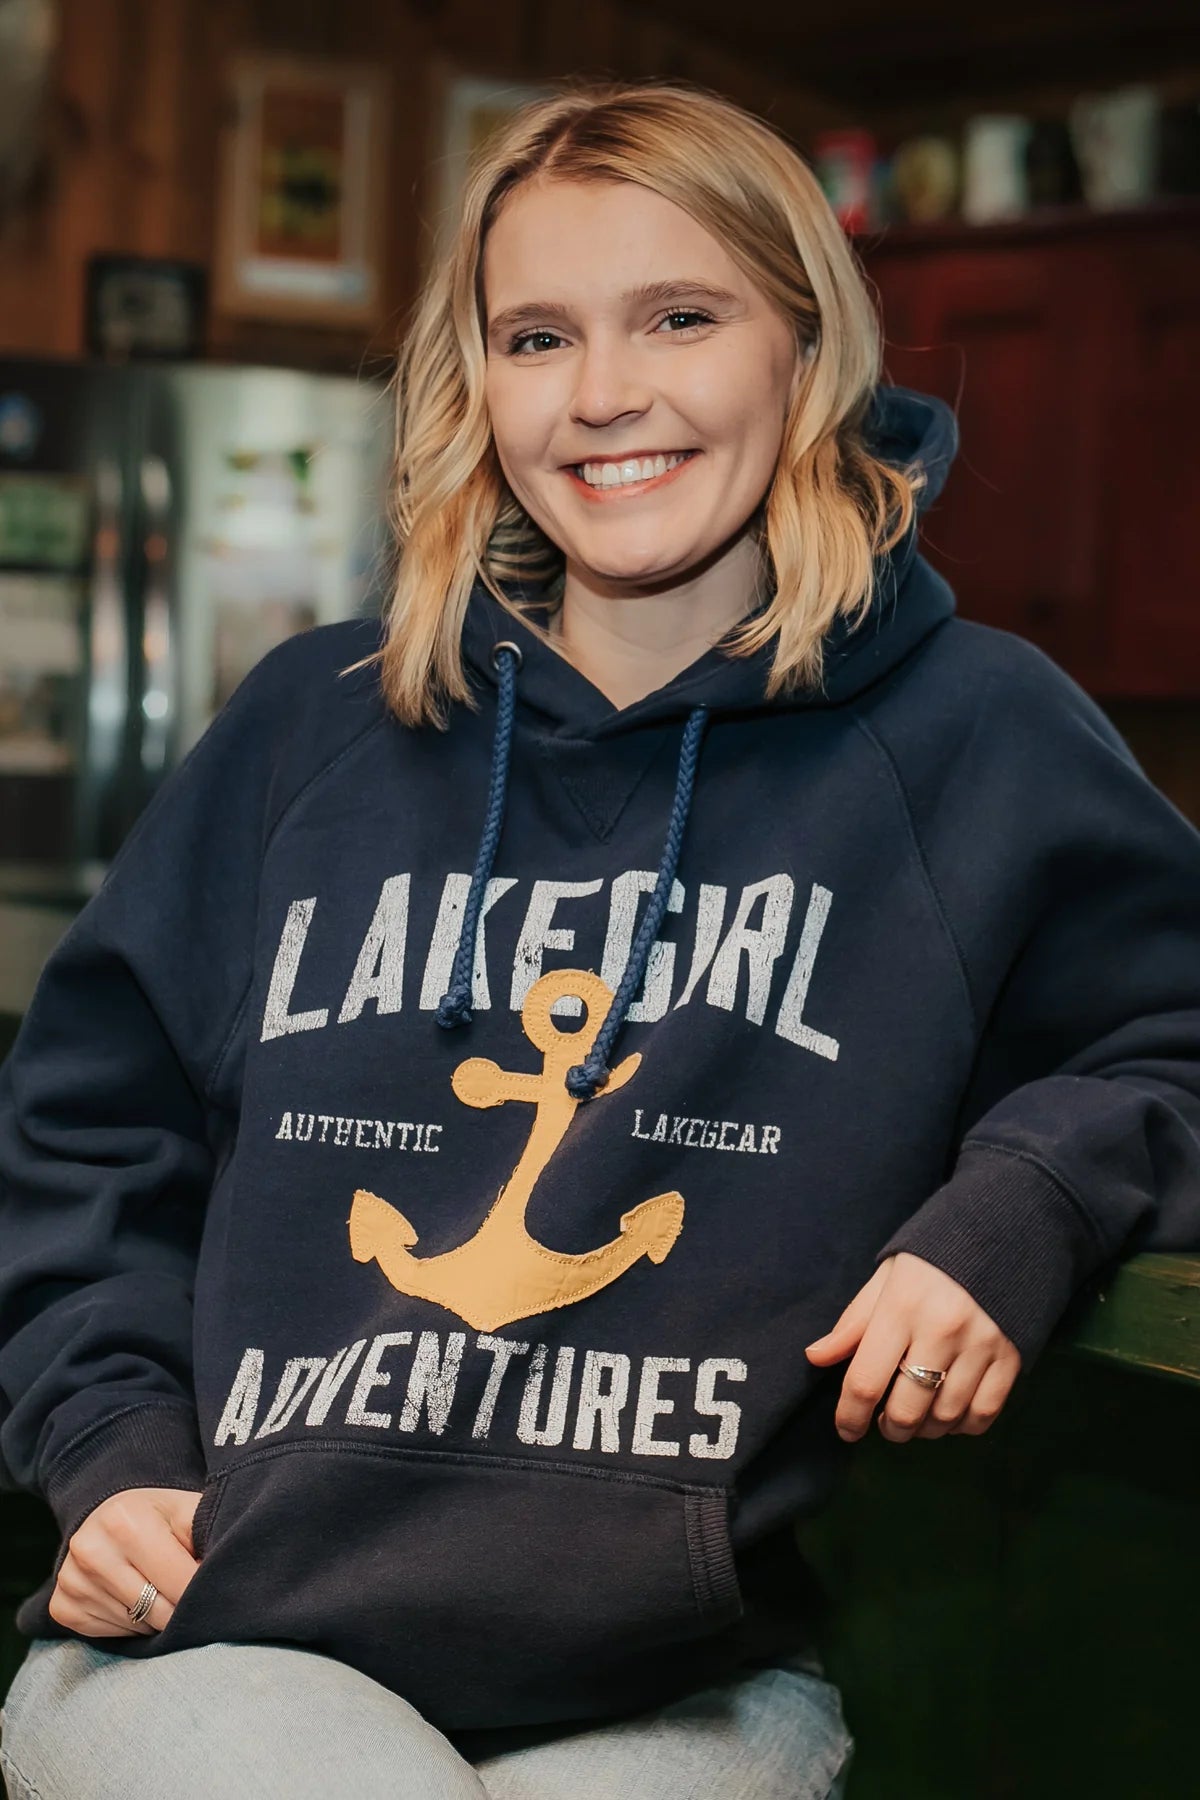 Lakegirl Adventures Hooded Sweatshirt